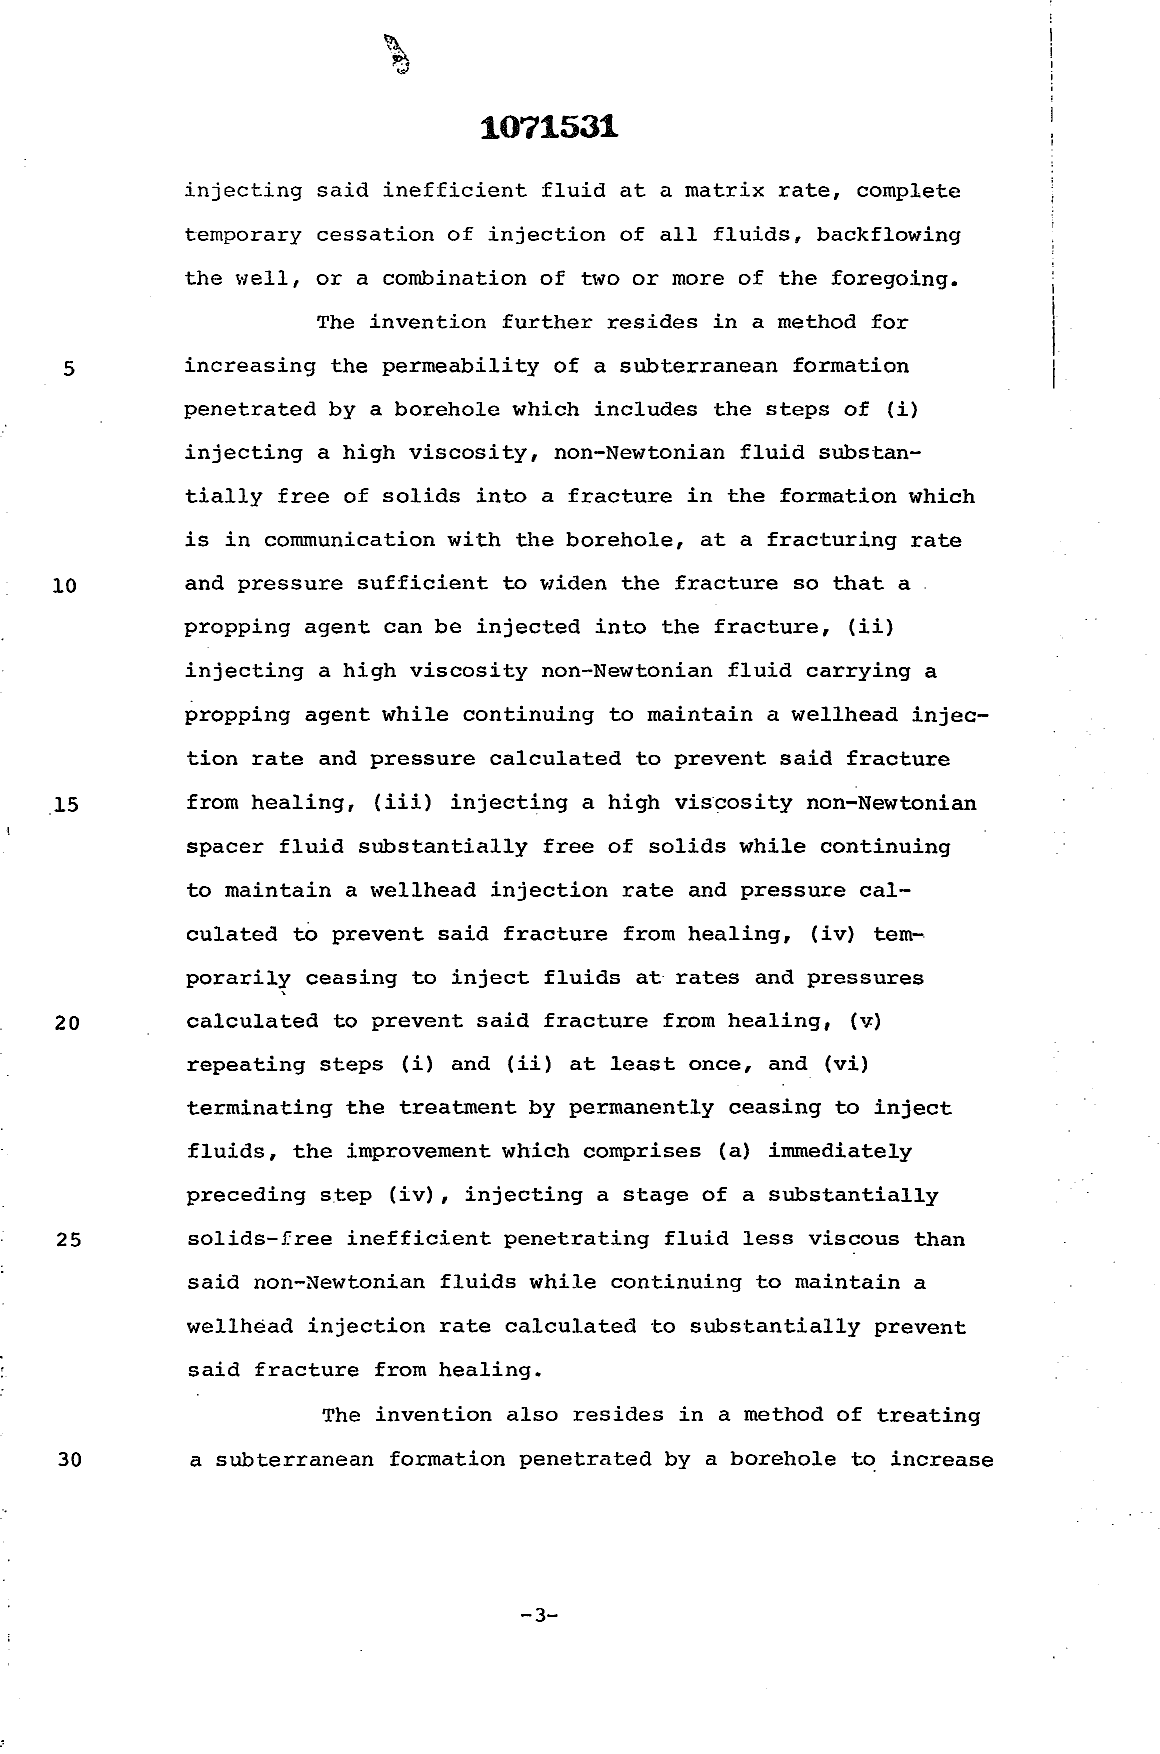 Canadian Patent Document 1071531. Description 19940325. Image 3 of 17